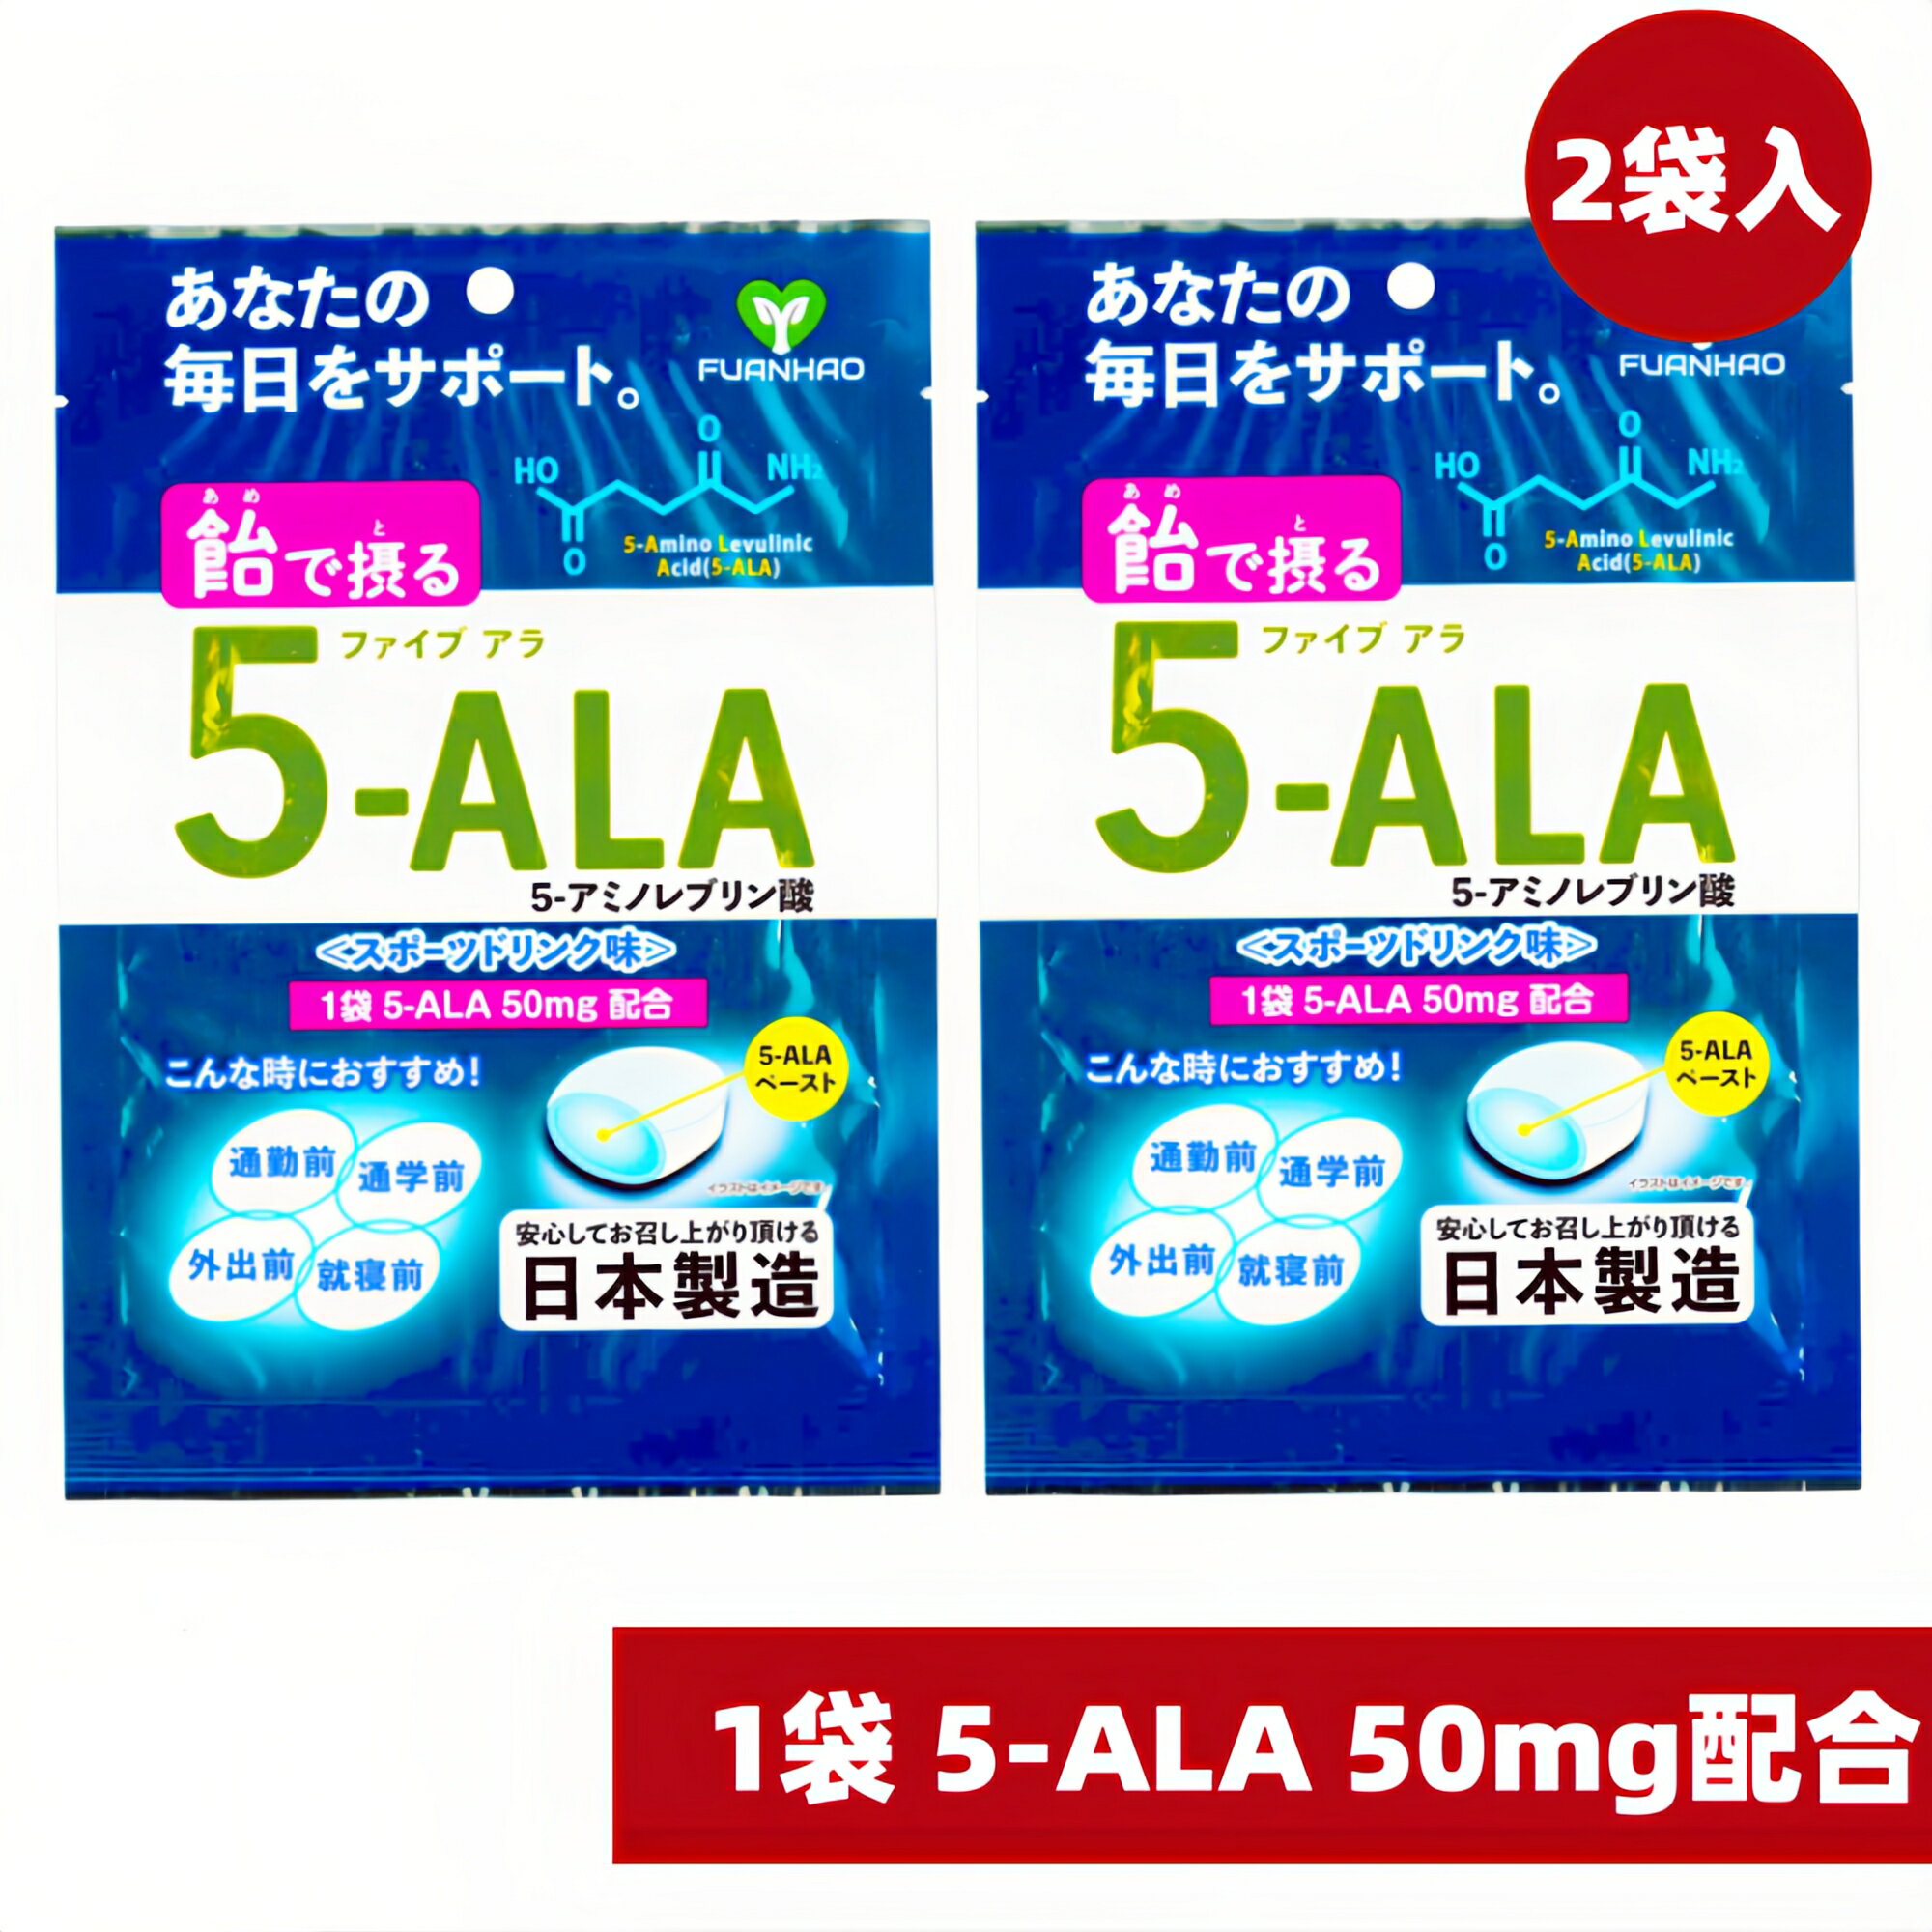 5-ALA ファイブアラ サプリメント 日本製 15粒入 2個セット 飴で摂る 体内対策サポート 5-アミノレブリン酸 5-アミノレブリン酸 ala サ..